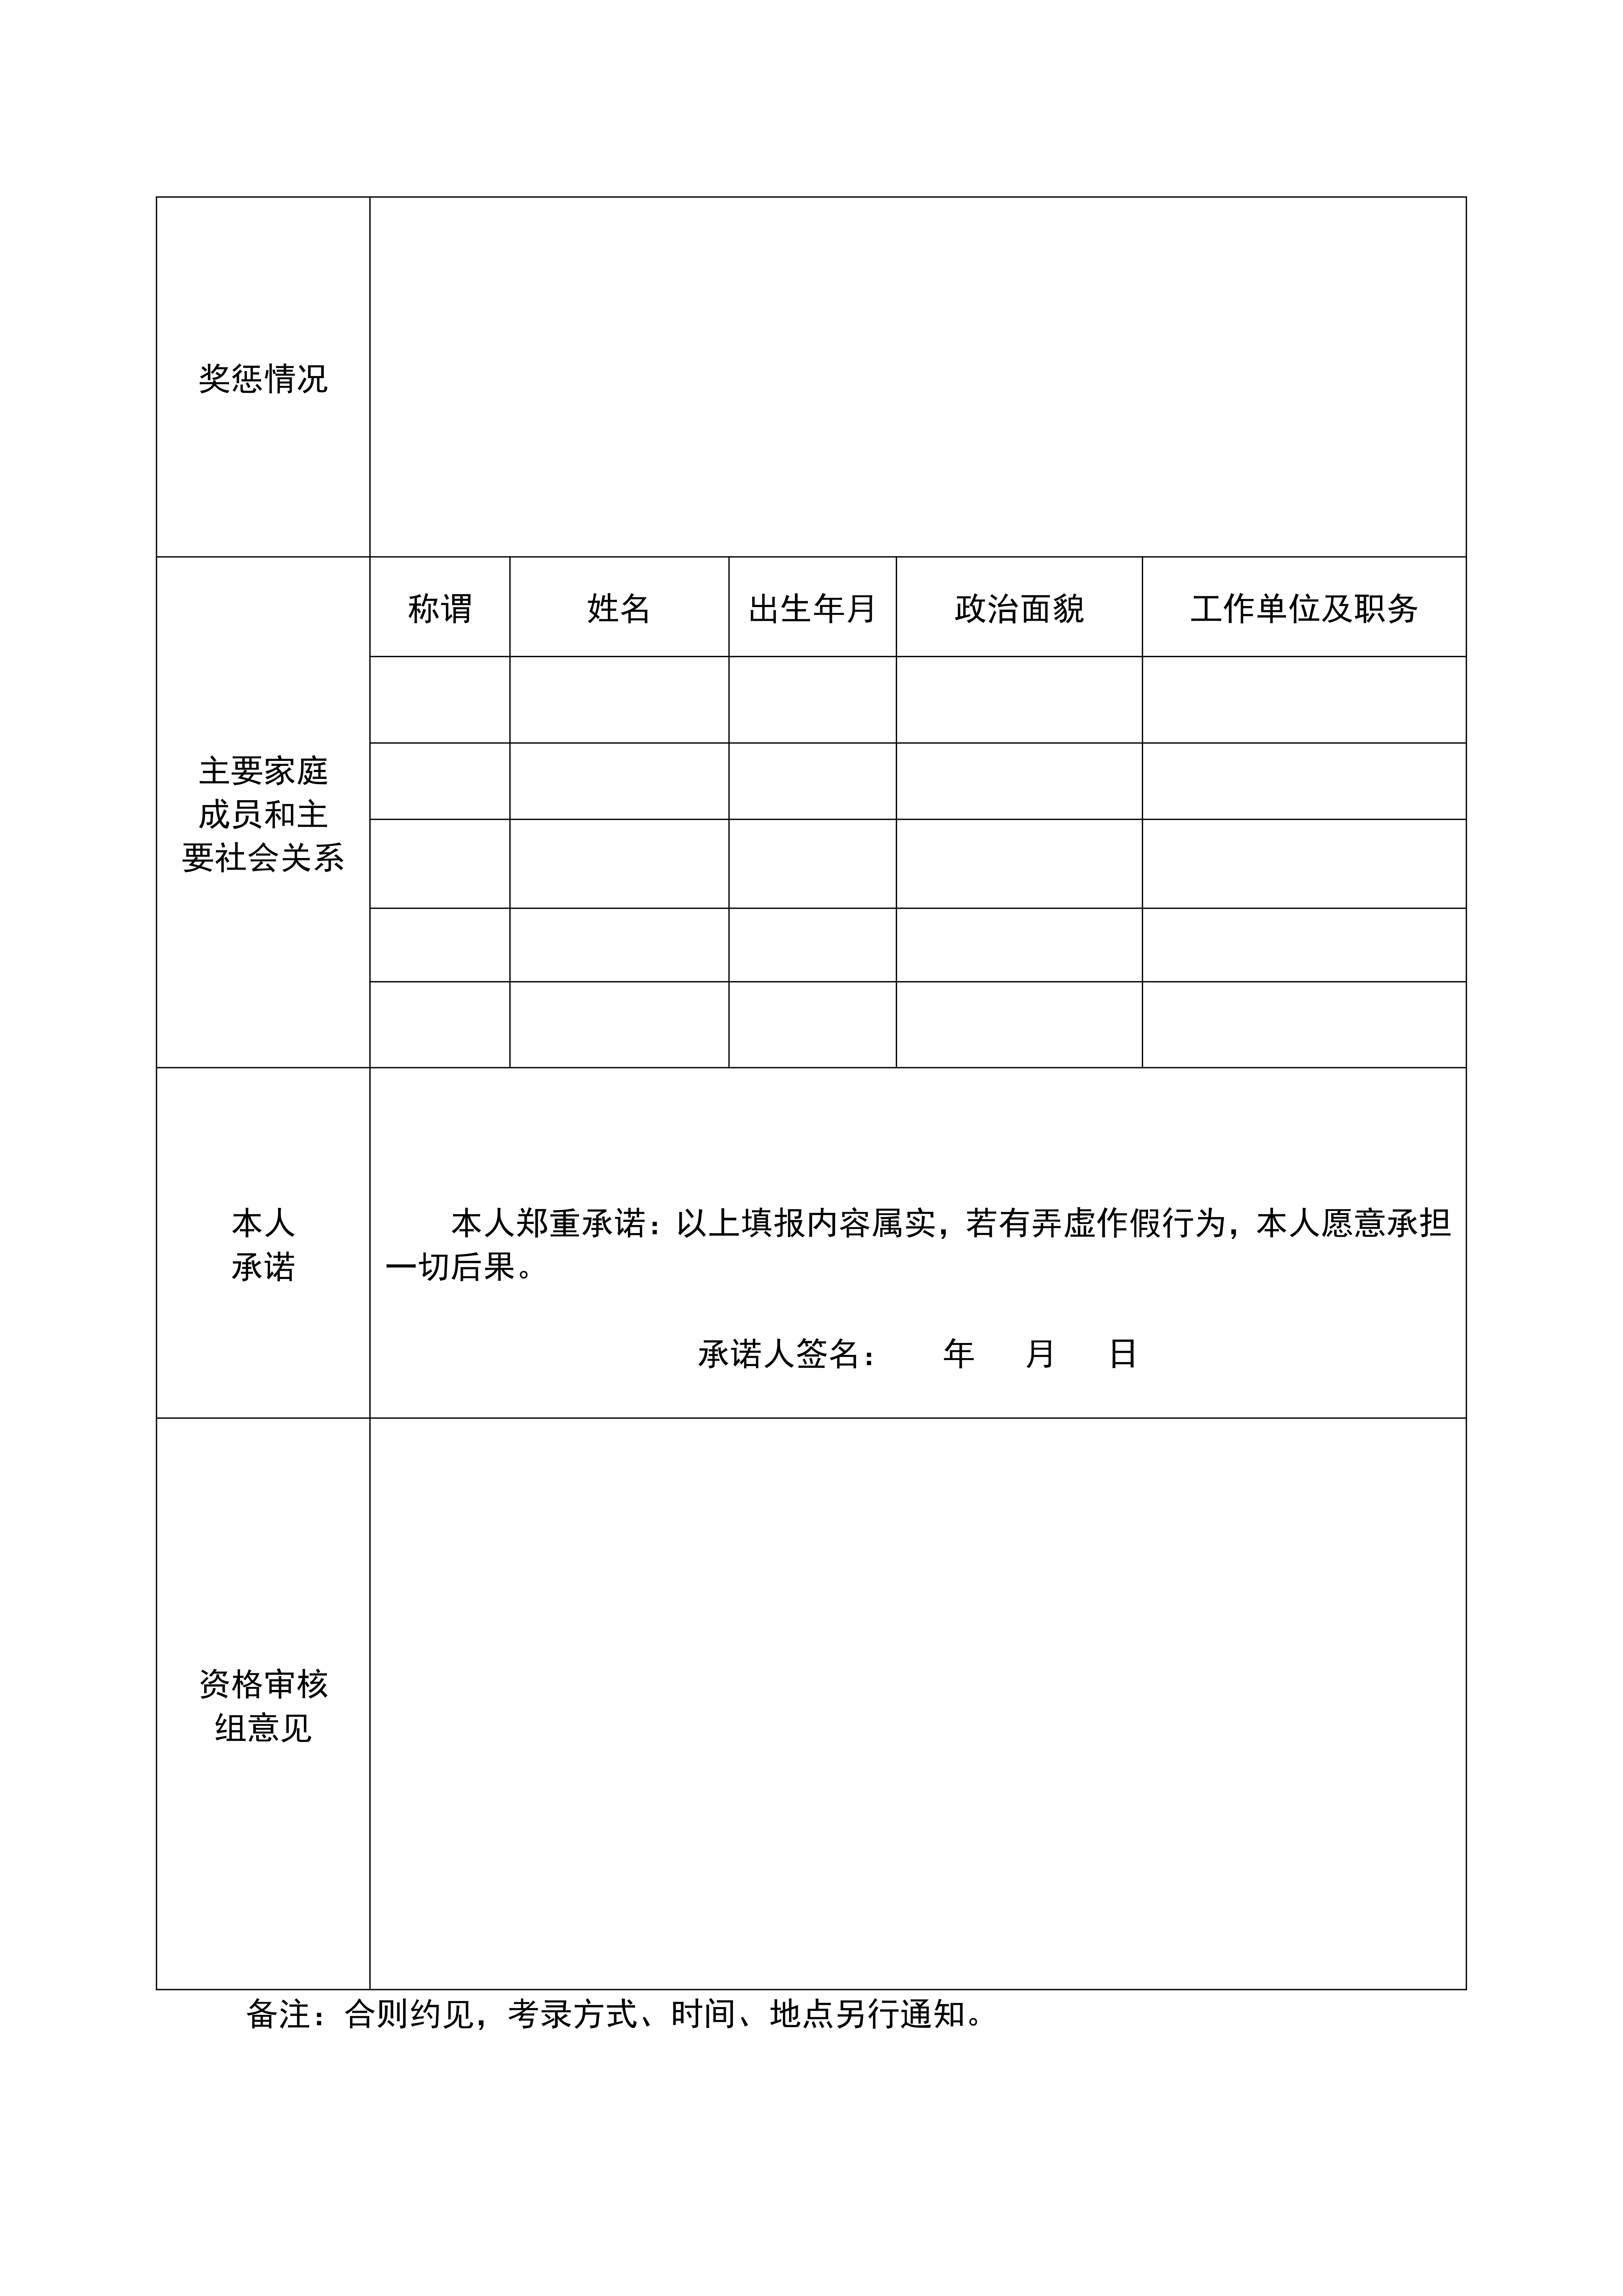 15vip太阳成(集团)有限公司应聘人员登记表_01.png